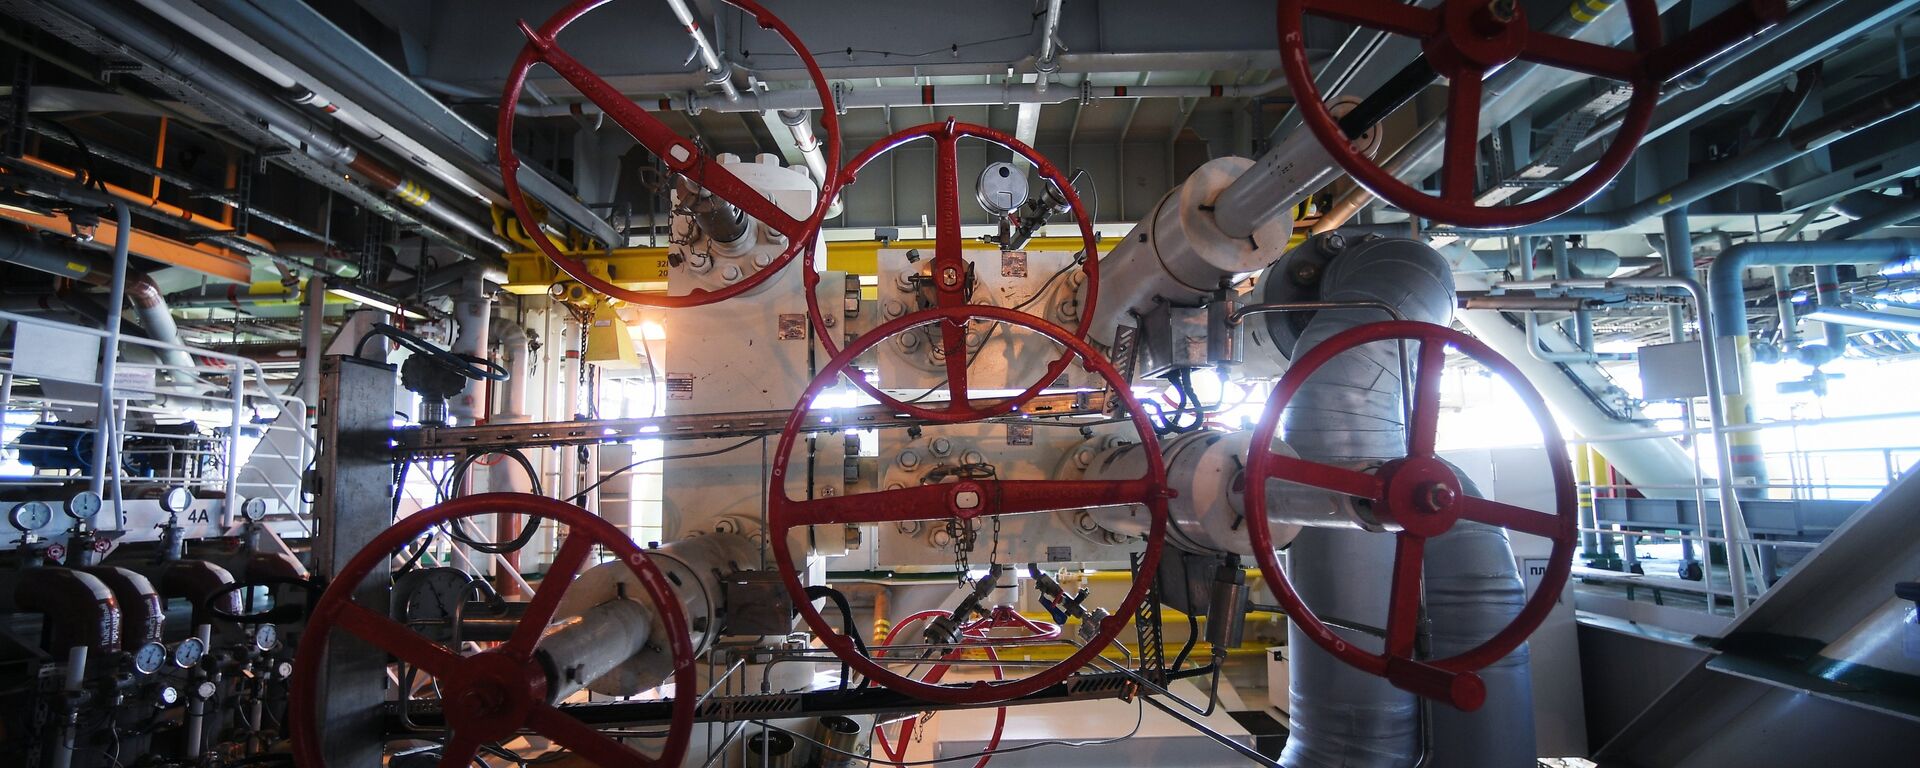 La maquinaria de una plataforma rusa instalada en un yacimiento de petróleo y gas - Sputnik Mundo, 1920, 20.05.2021